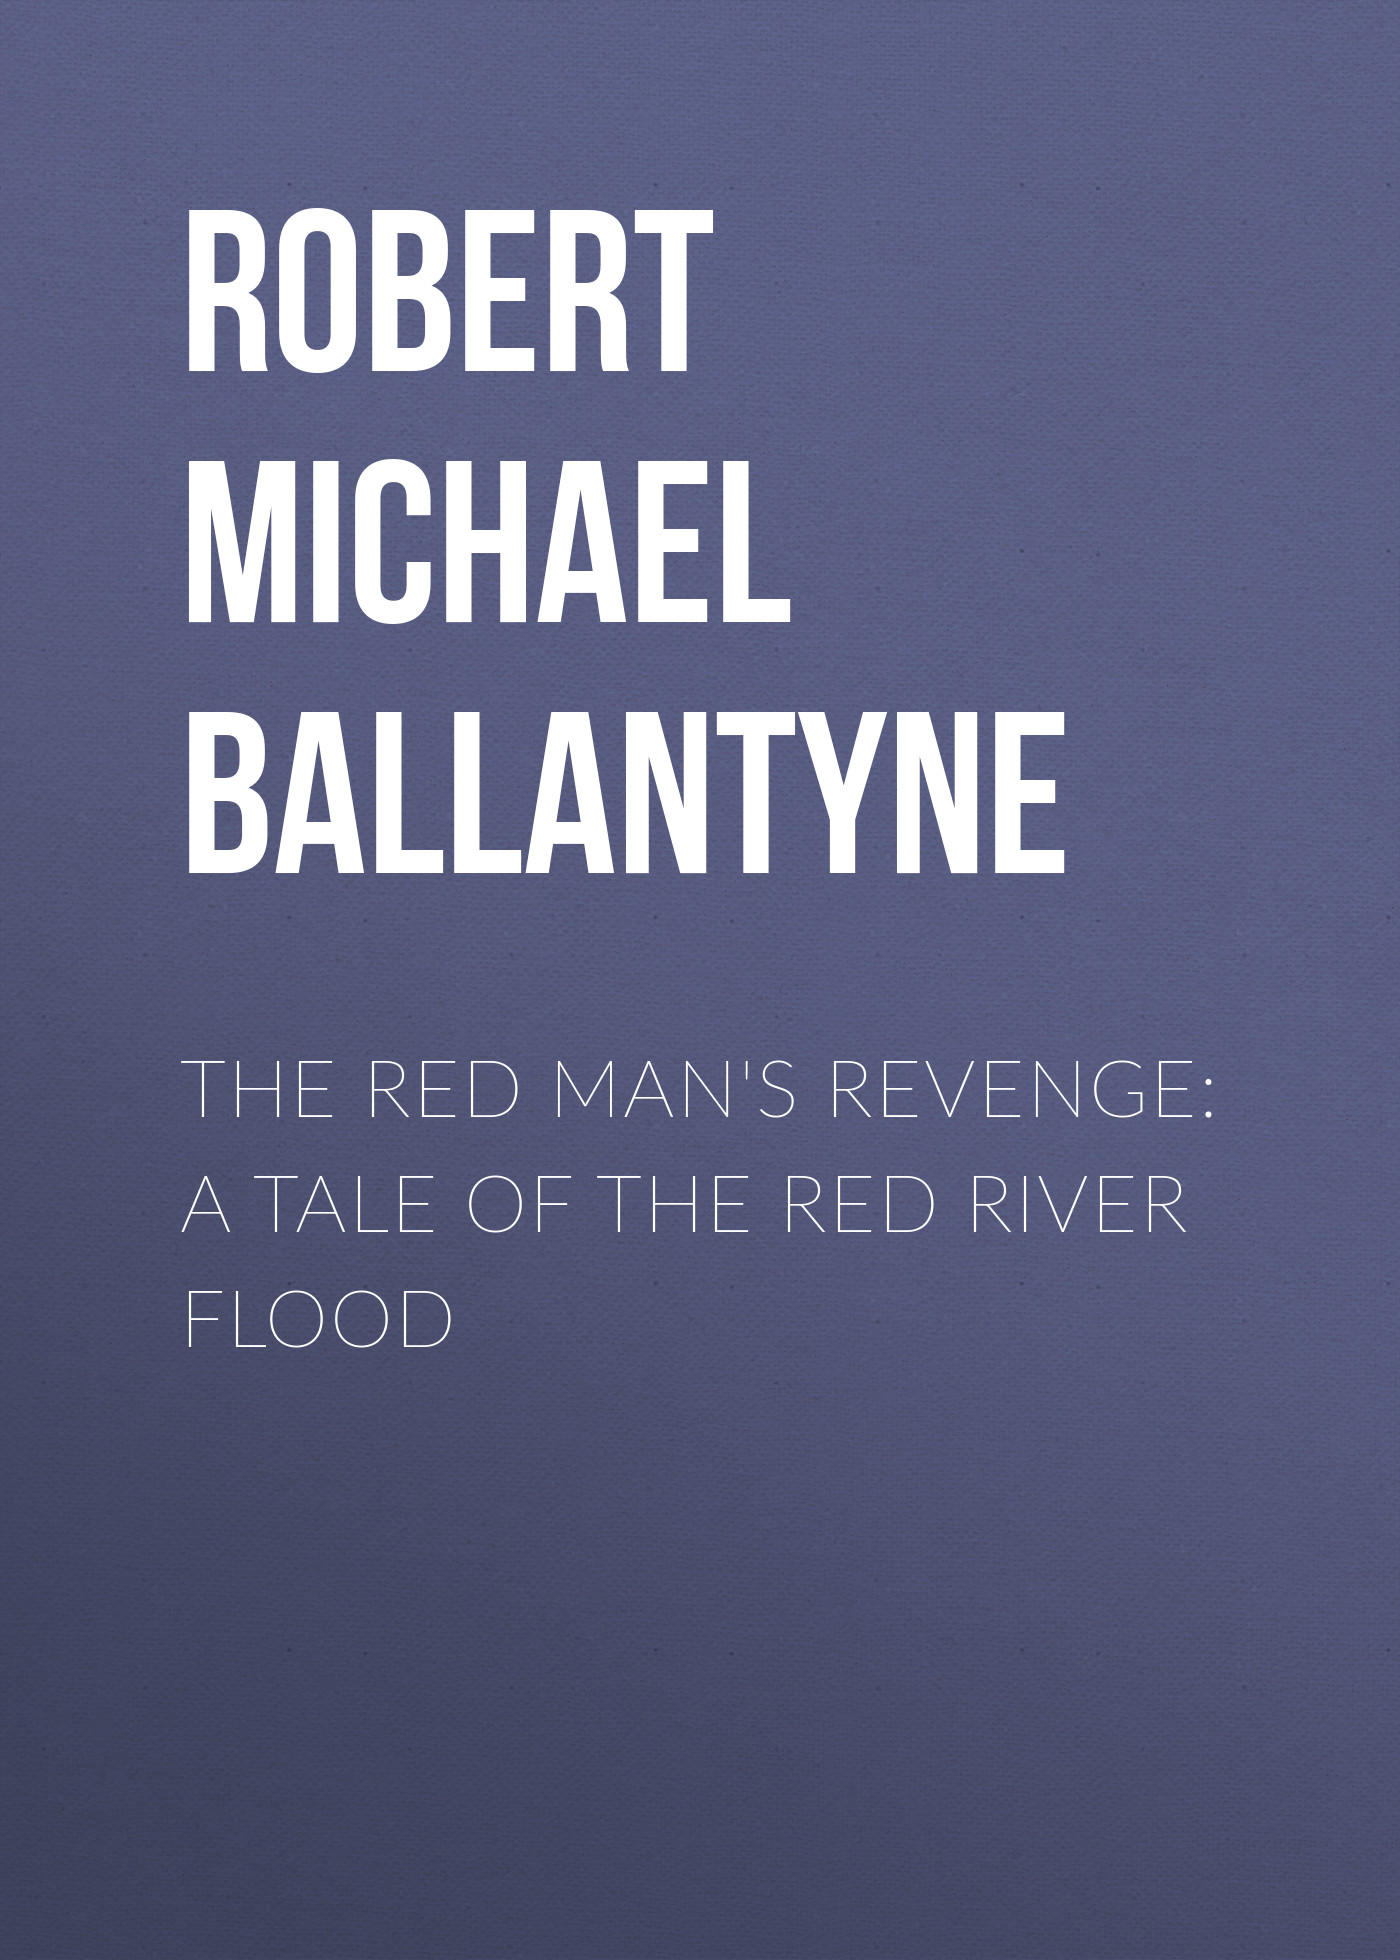 Книга The Red Man's Revenge: A Tale of The Red River Flood из серии , созданная Robert Michael Ballantyne, может относится к жанру Детские приключения, Литература 19 века, Зарубежная старинная литература, Зарубежная классика, Зарубежные детские книги. Стоимость электронной книги The Red Man's Revenge: A Tale of The Red River Flood с идентификатором 36093821 составляет 0 руб.